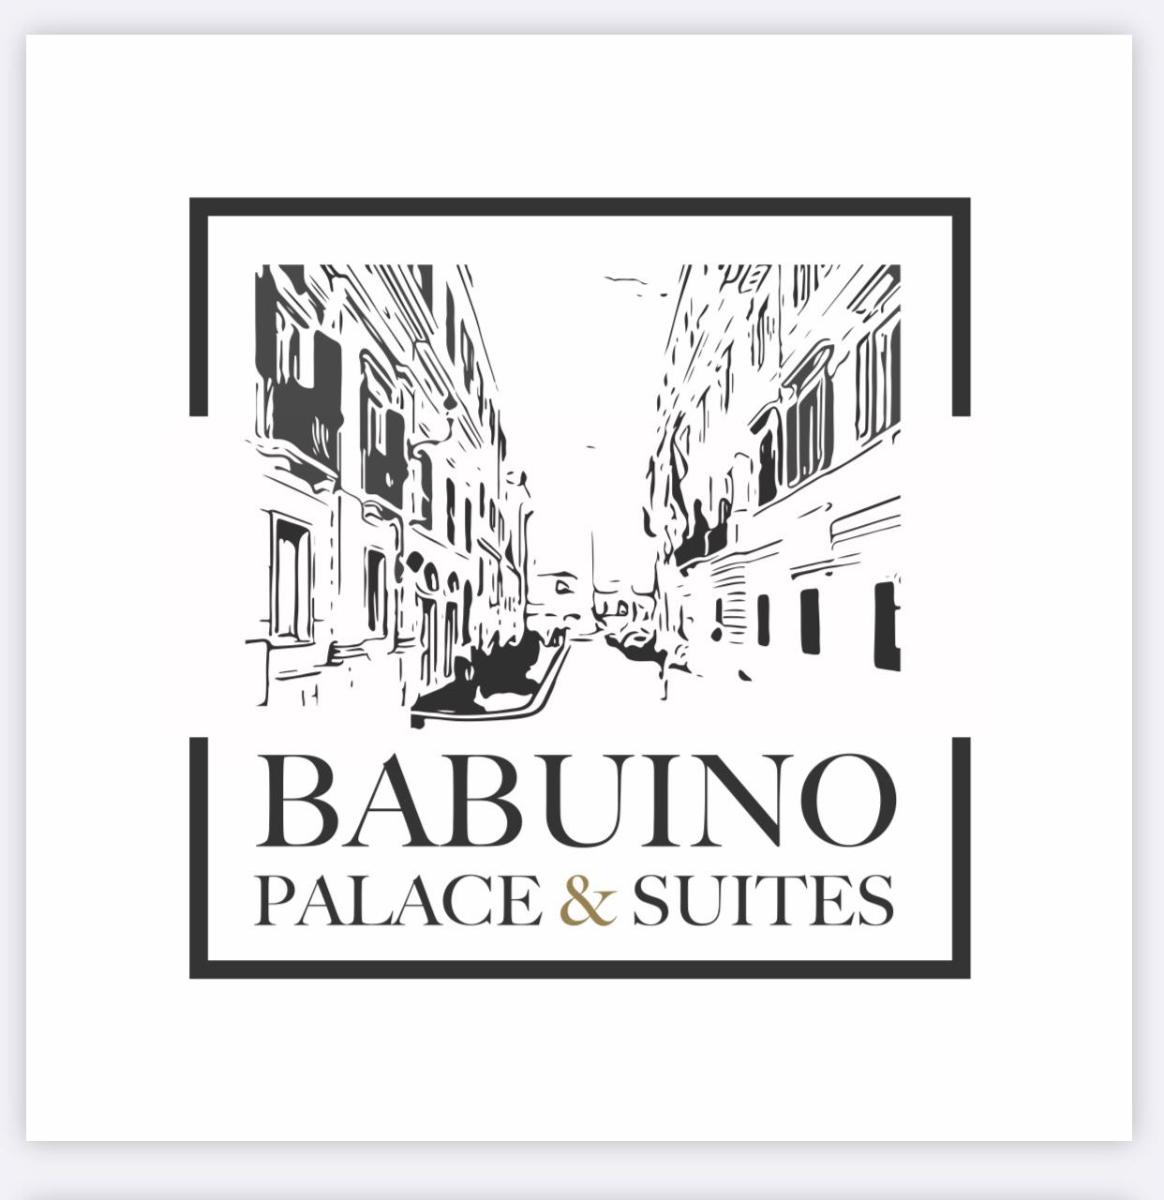 babuinopalace&suites